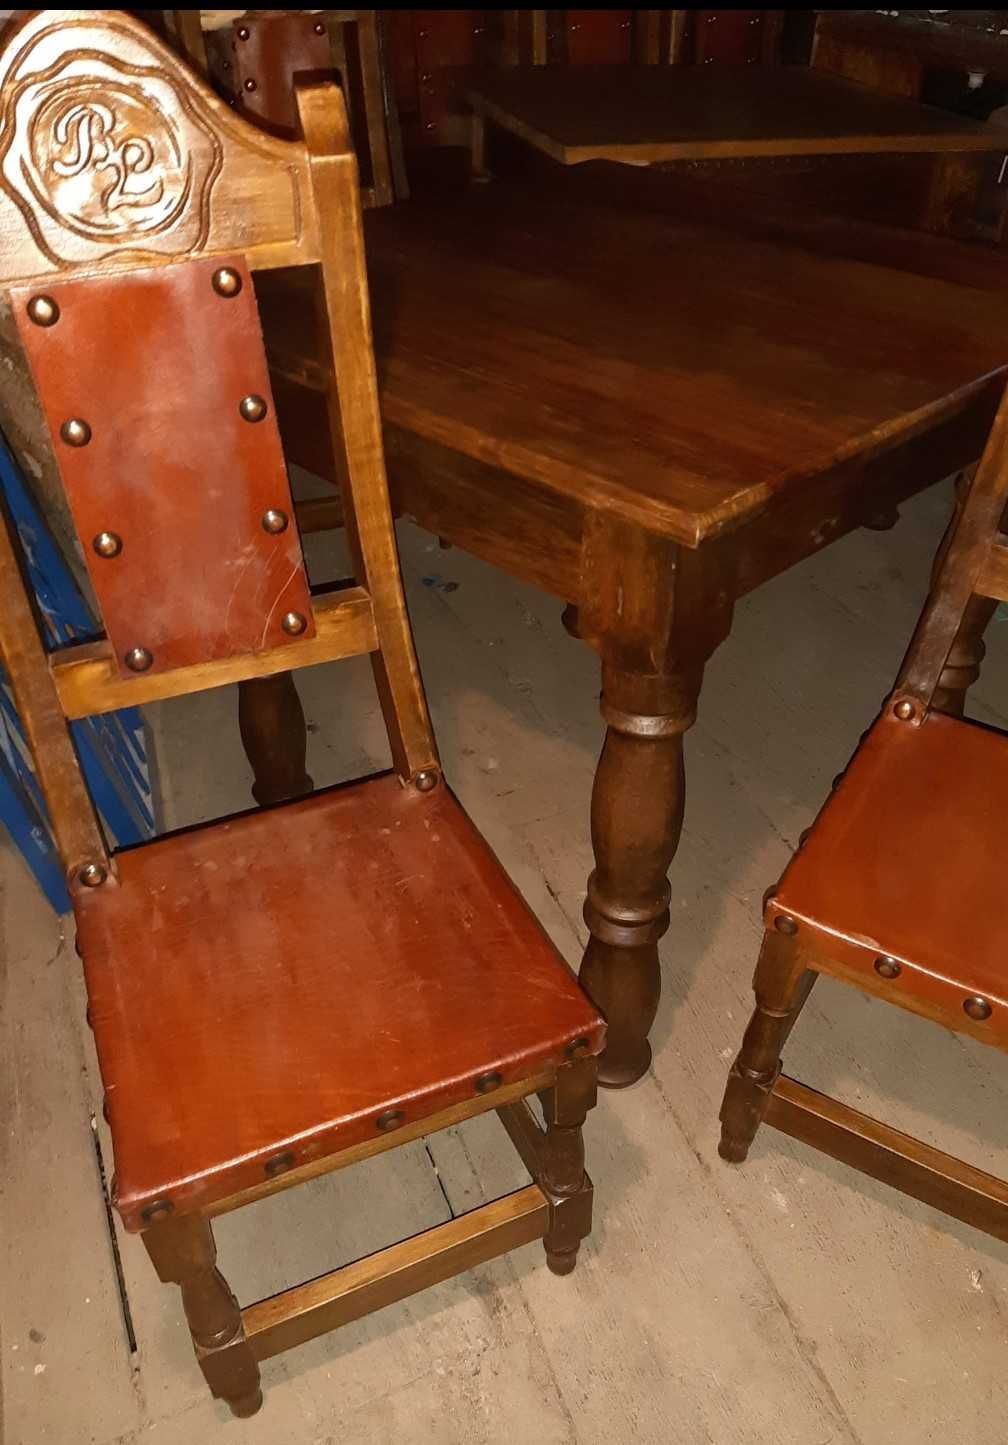 Mesas e cadeiras